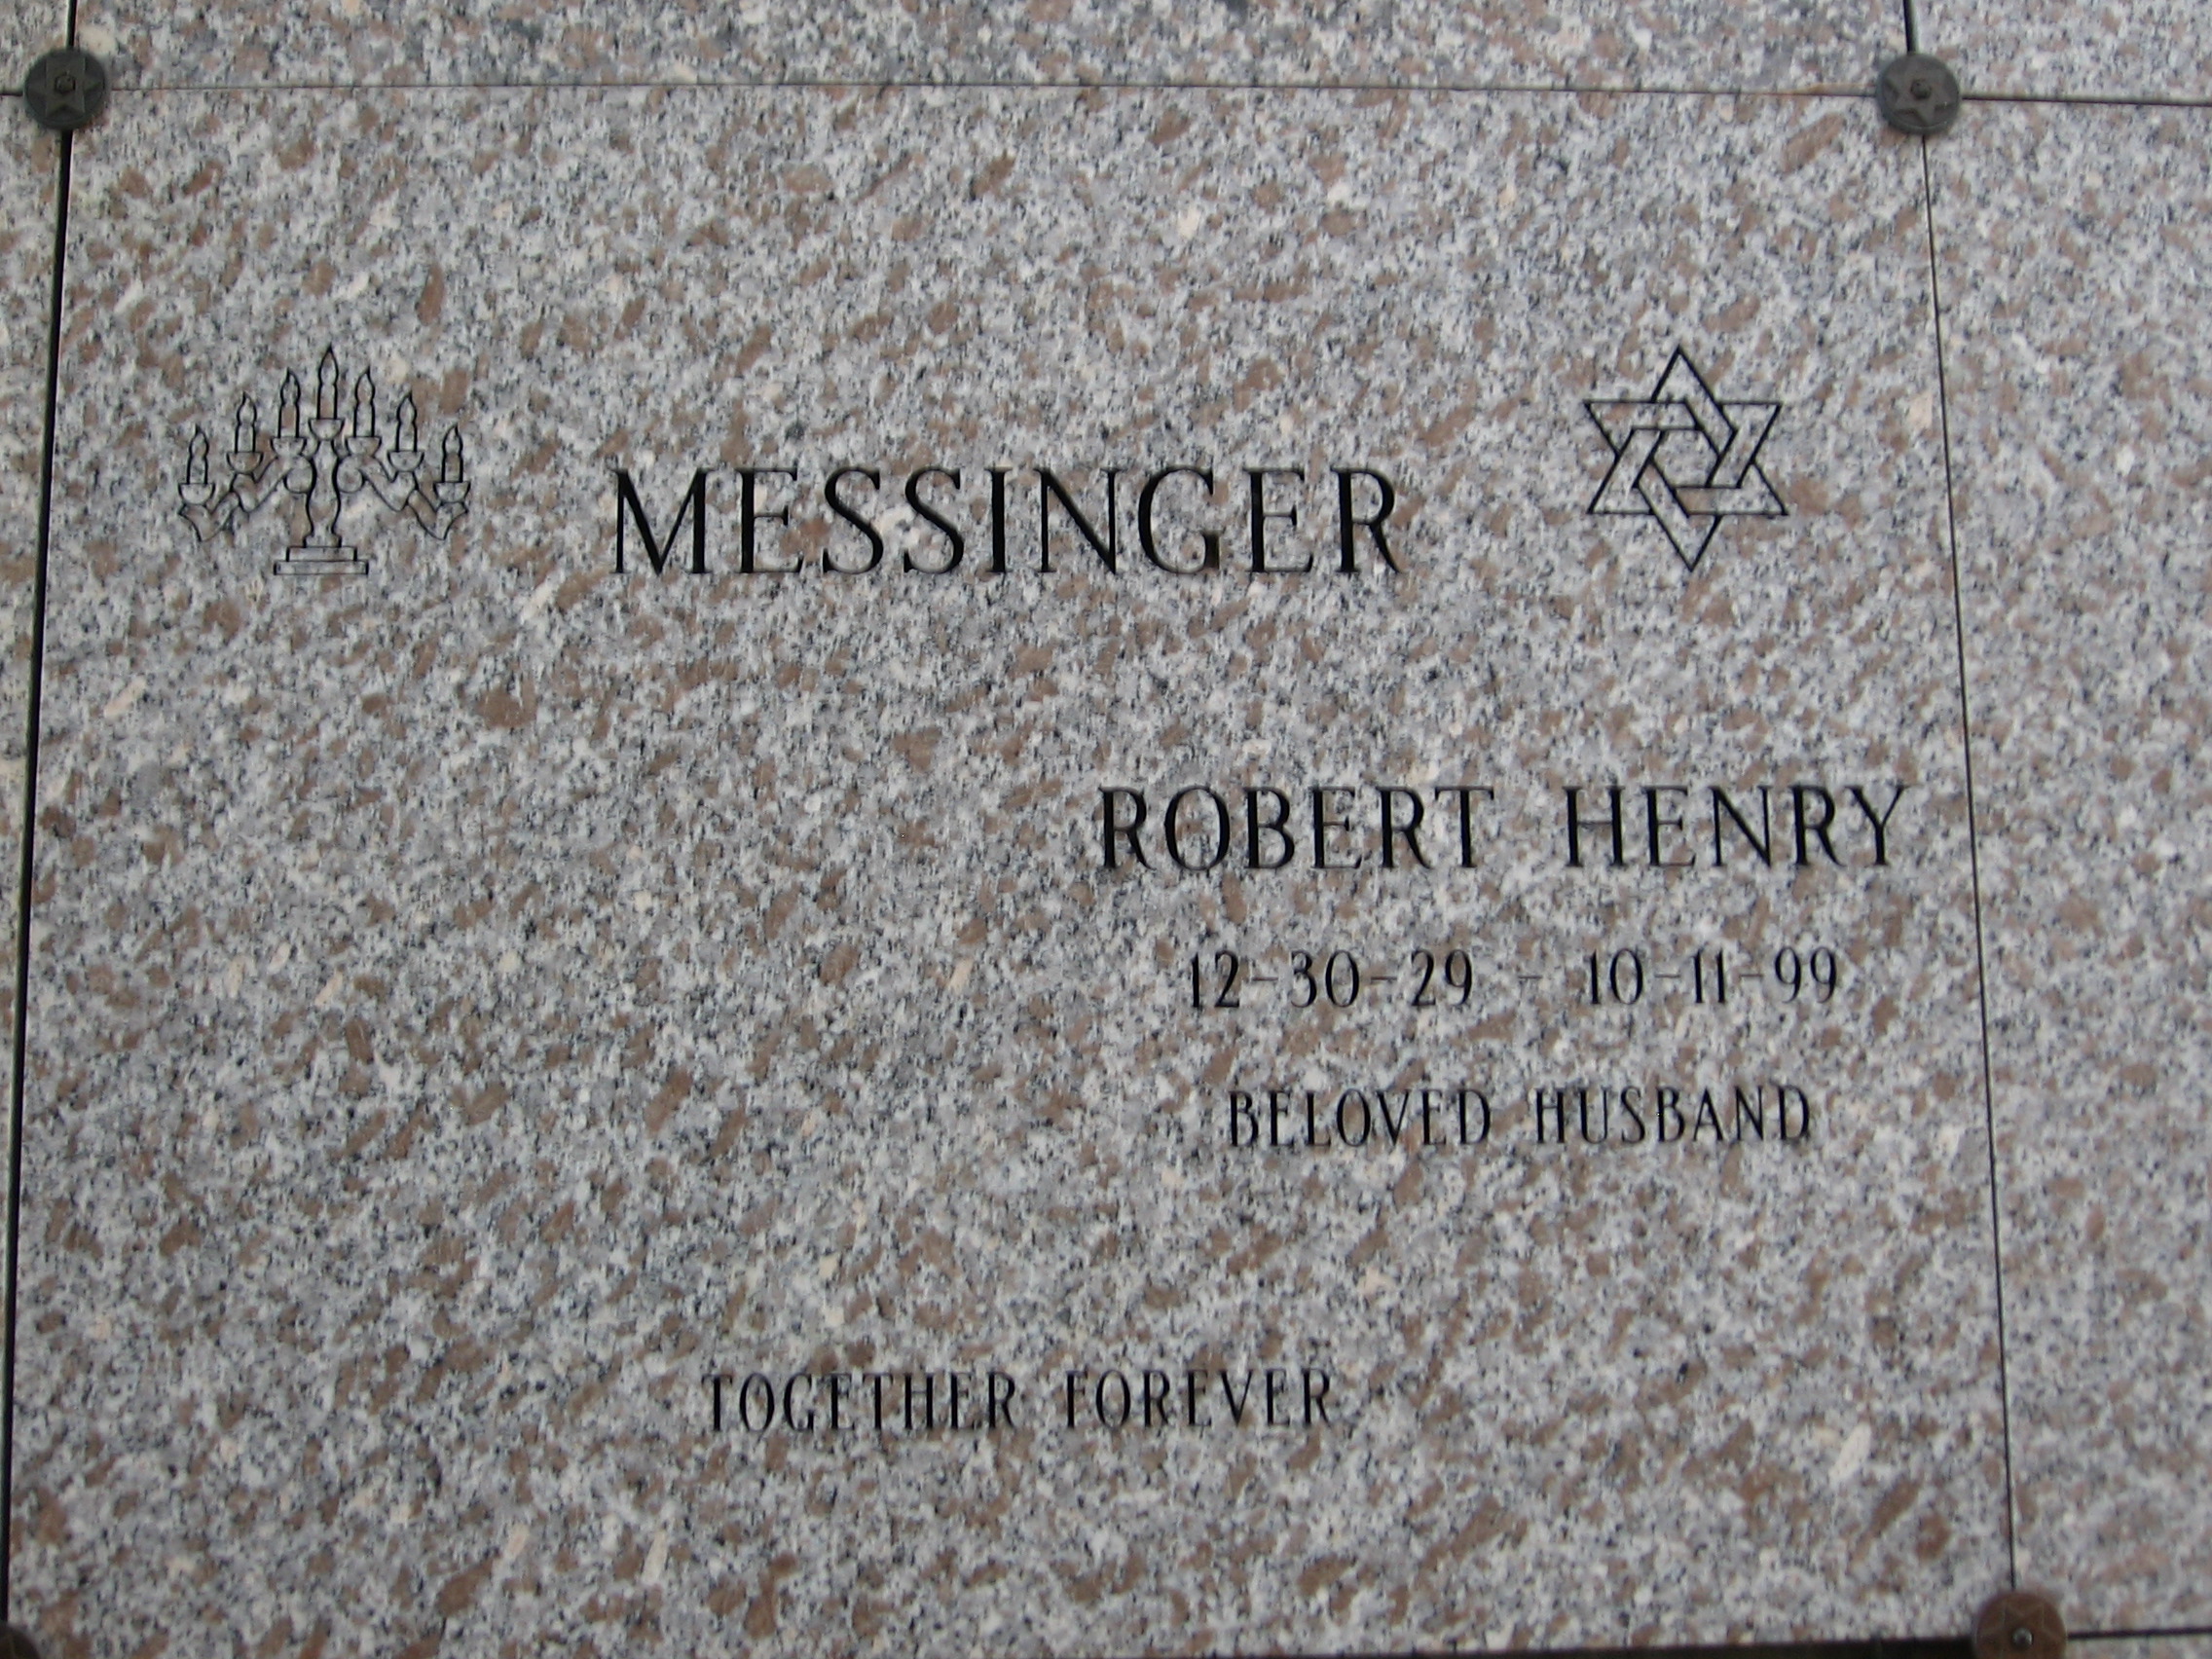 Robert Henry Messinger